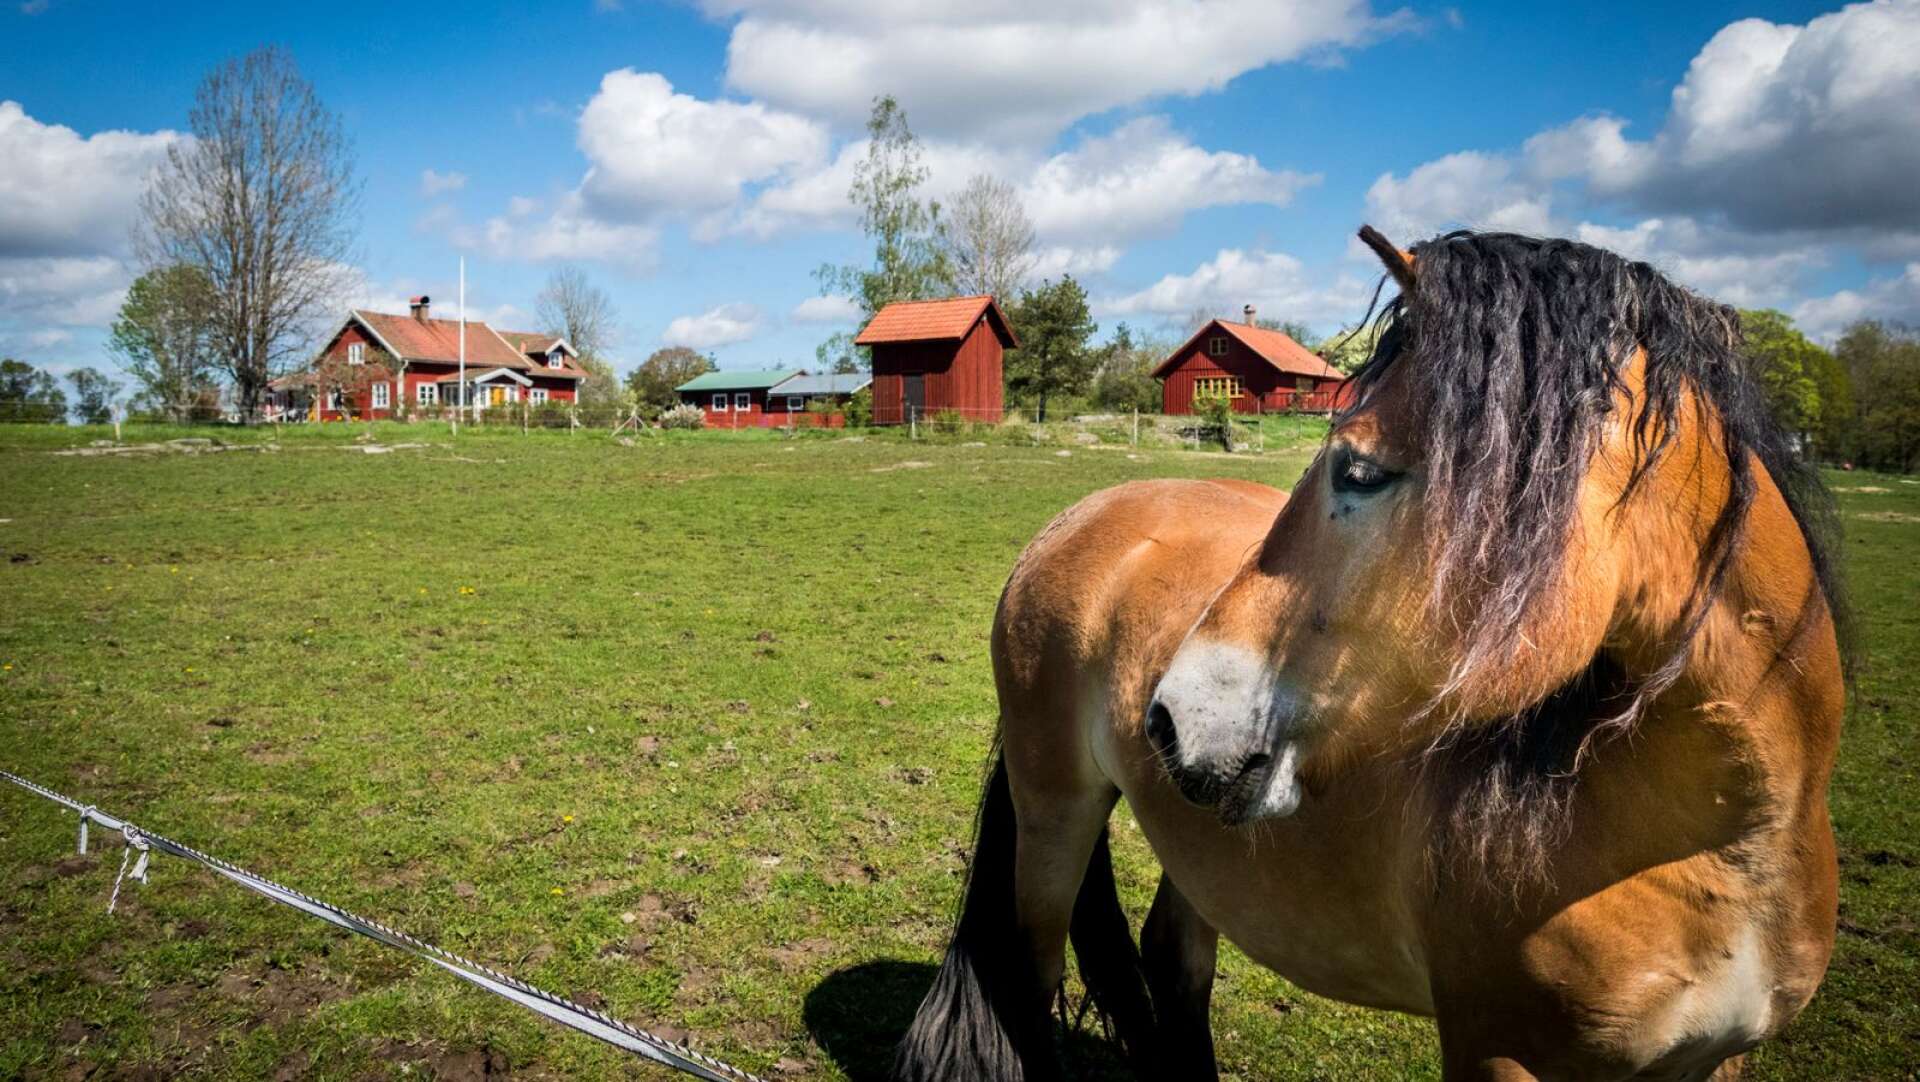 Nej, det här är (troligtvis) ingen riddarhäst, men vad gör väl det när man kan beta gräs i så natursköna miljöer som vid Vänsberg.